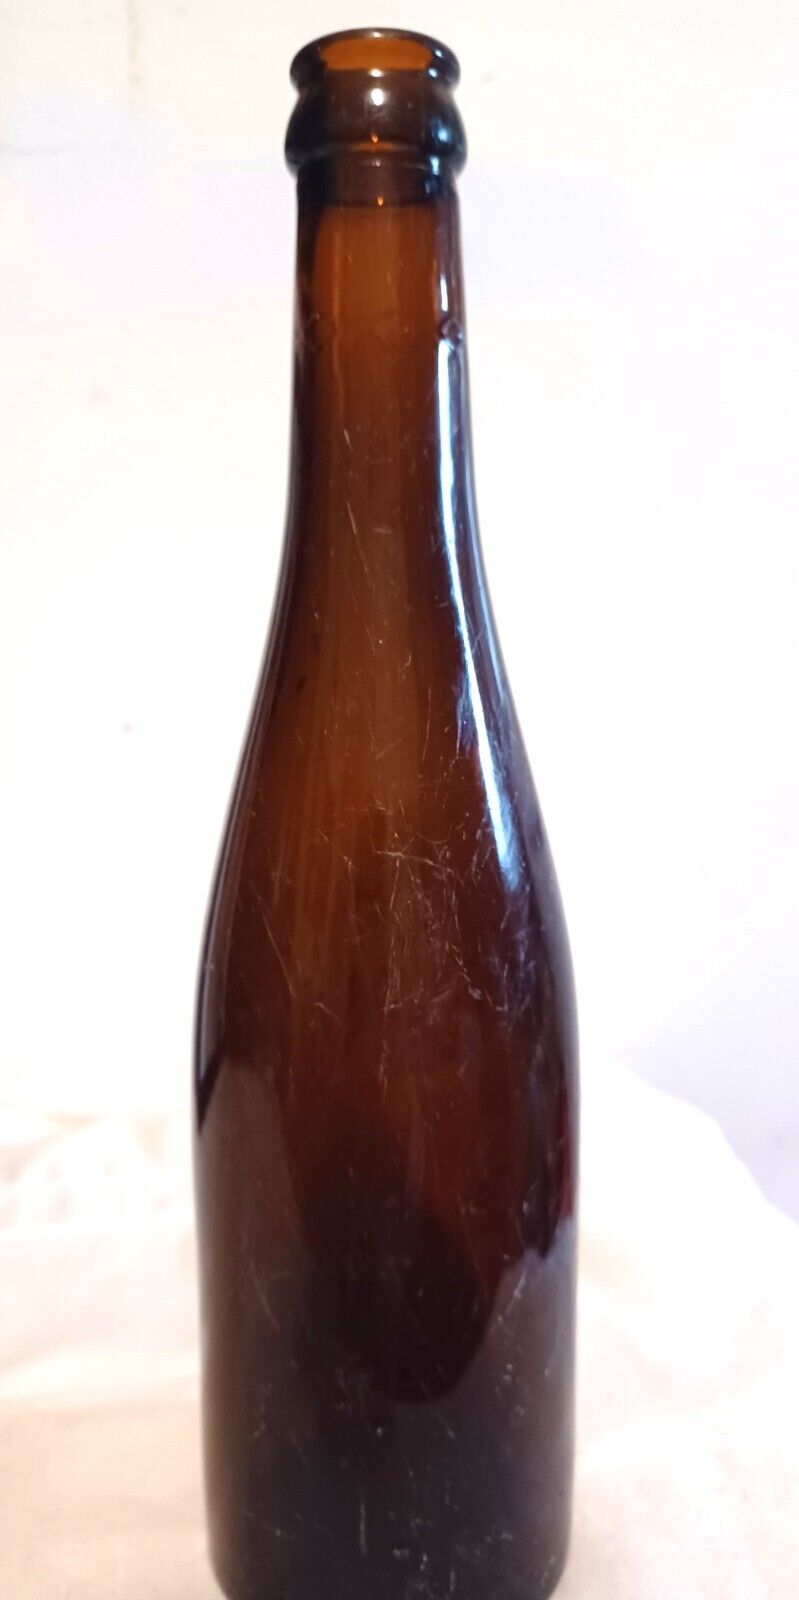 Vtg pre- prohibition Peter Doelger New York brown beer bottle